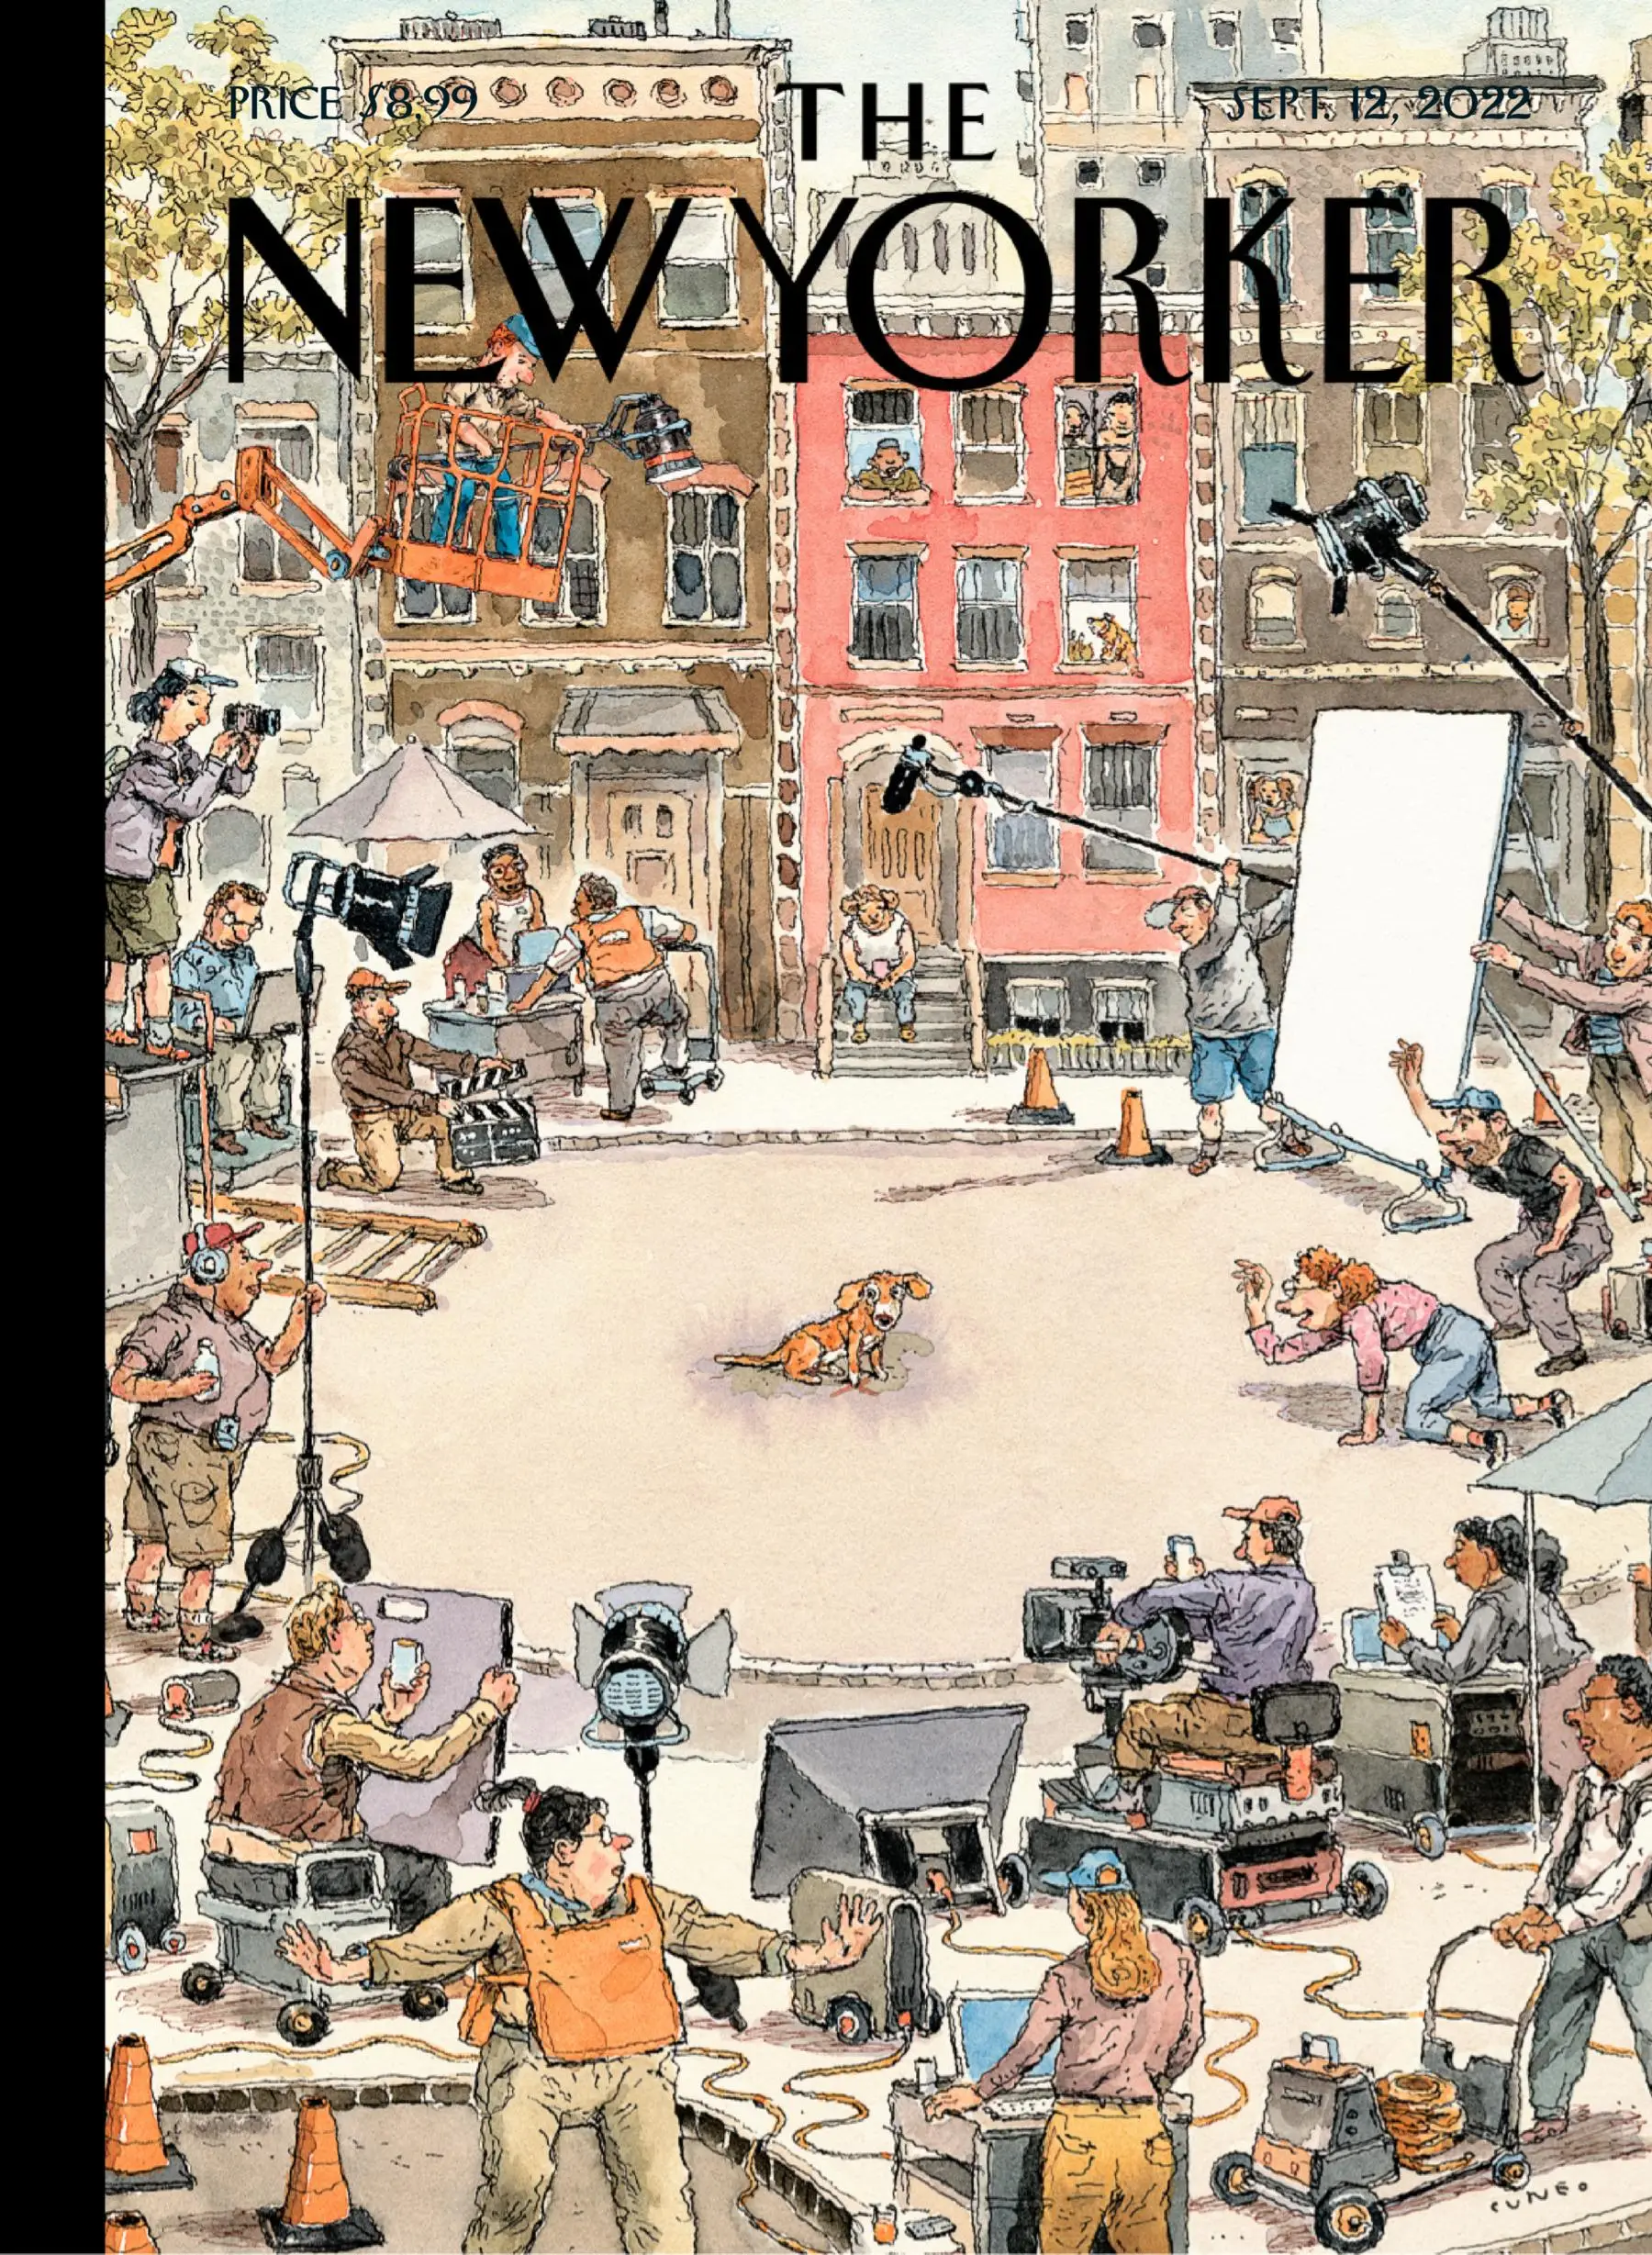 The New Yorker September 12, 2022 / AvaxHome